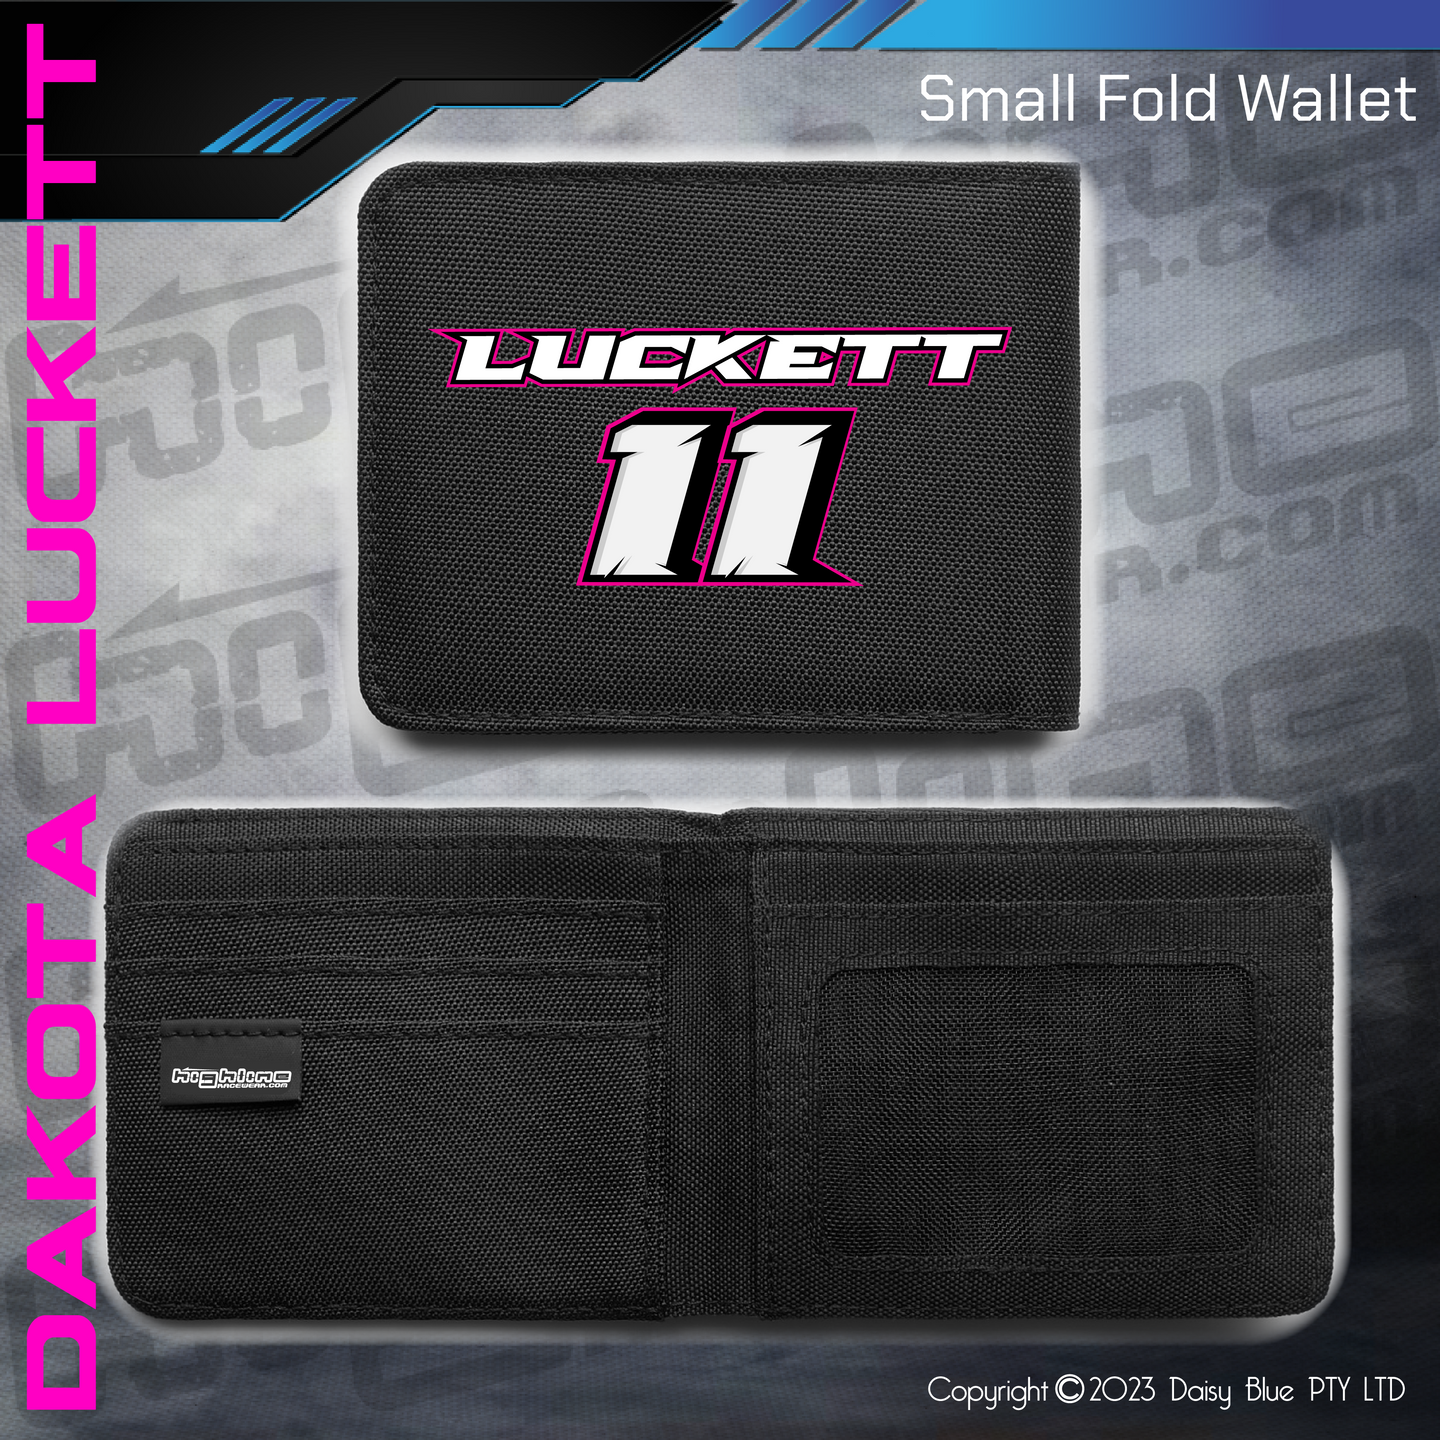 Compact Wallet - Dakota Luckett